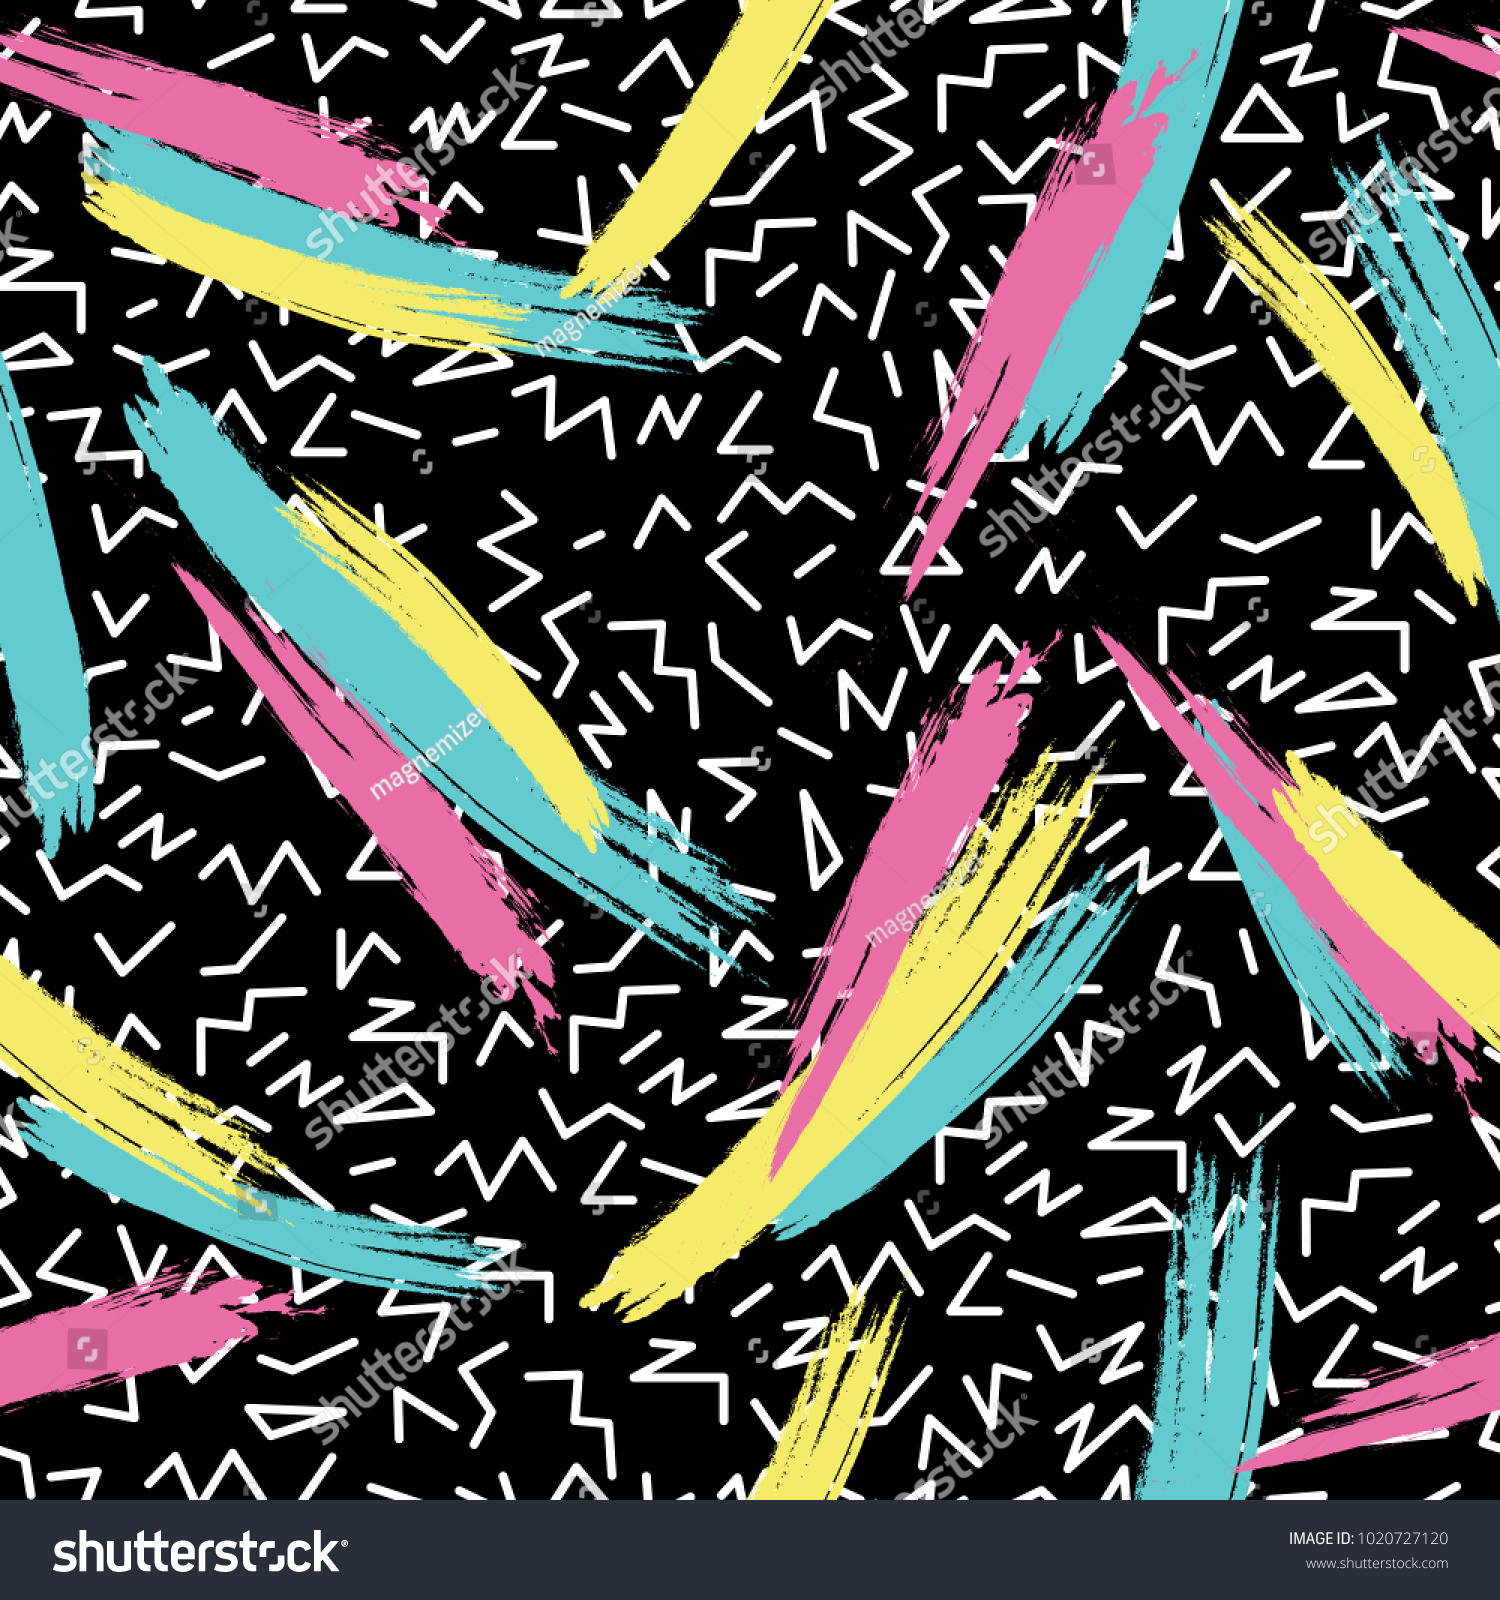 メンフィス式の抽象的なシームレスな手描きのブラシパターン のベクター画像素材 ロイヤリティフリー